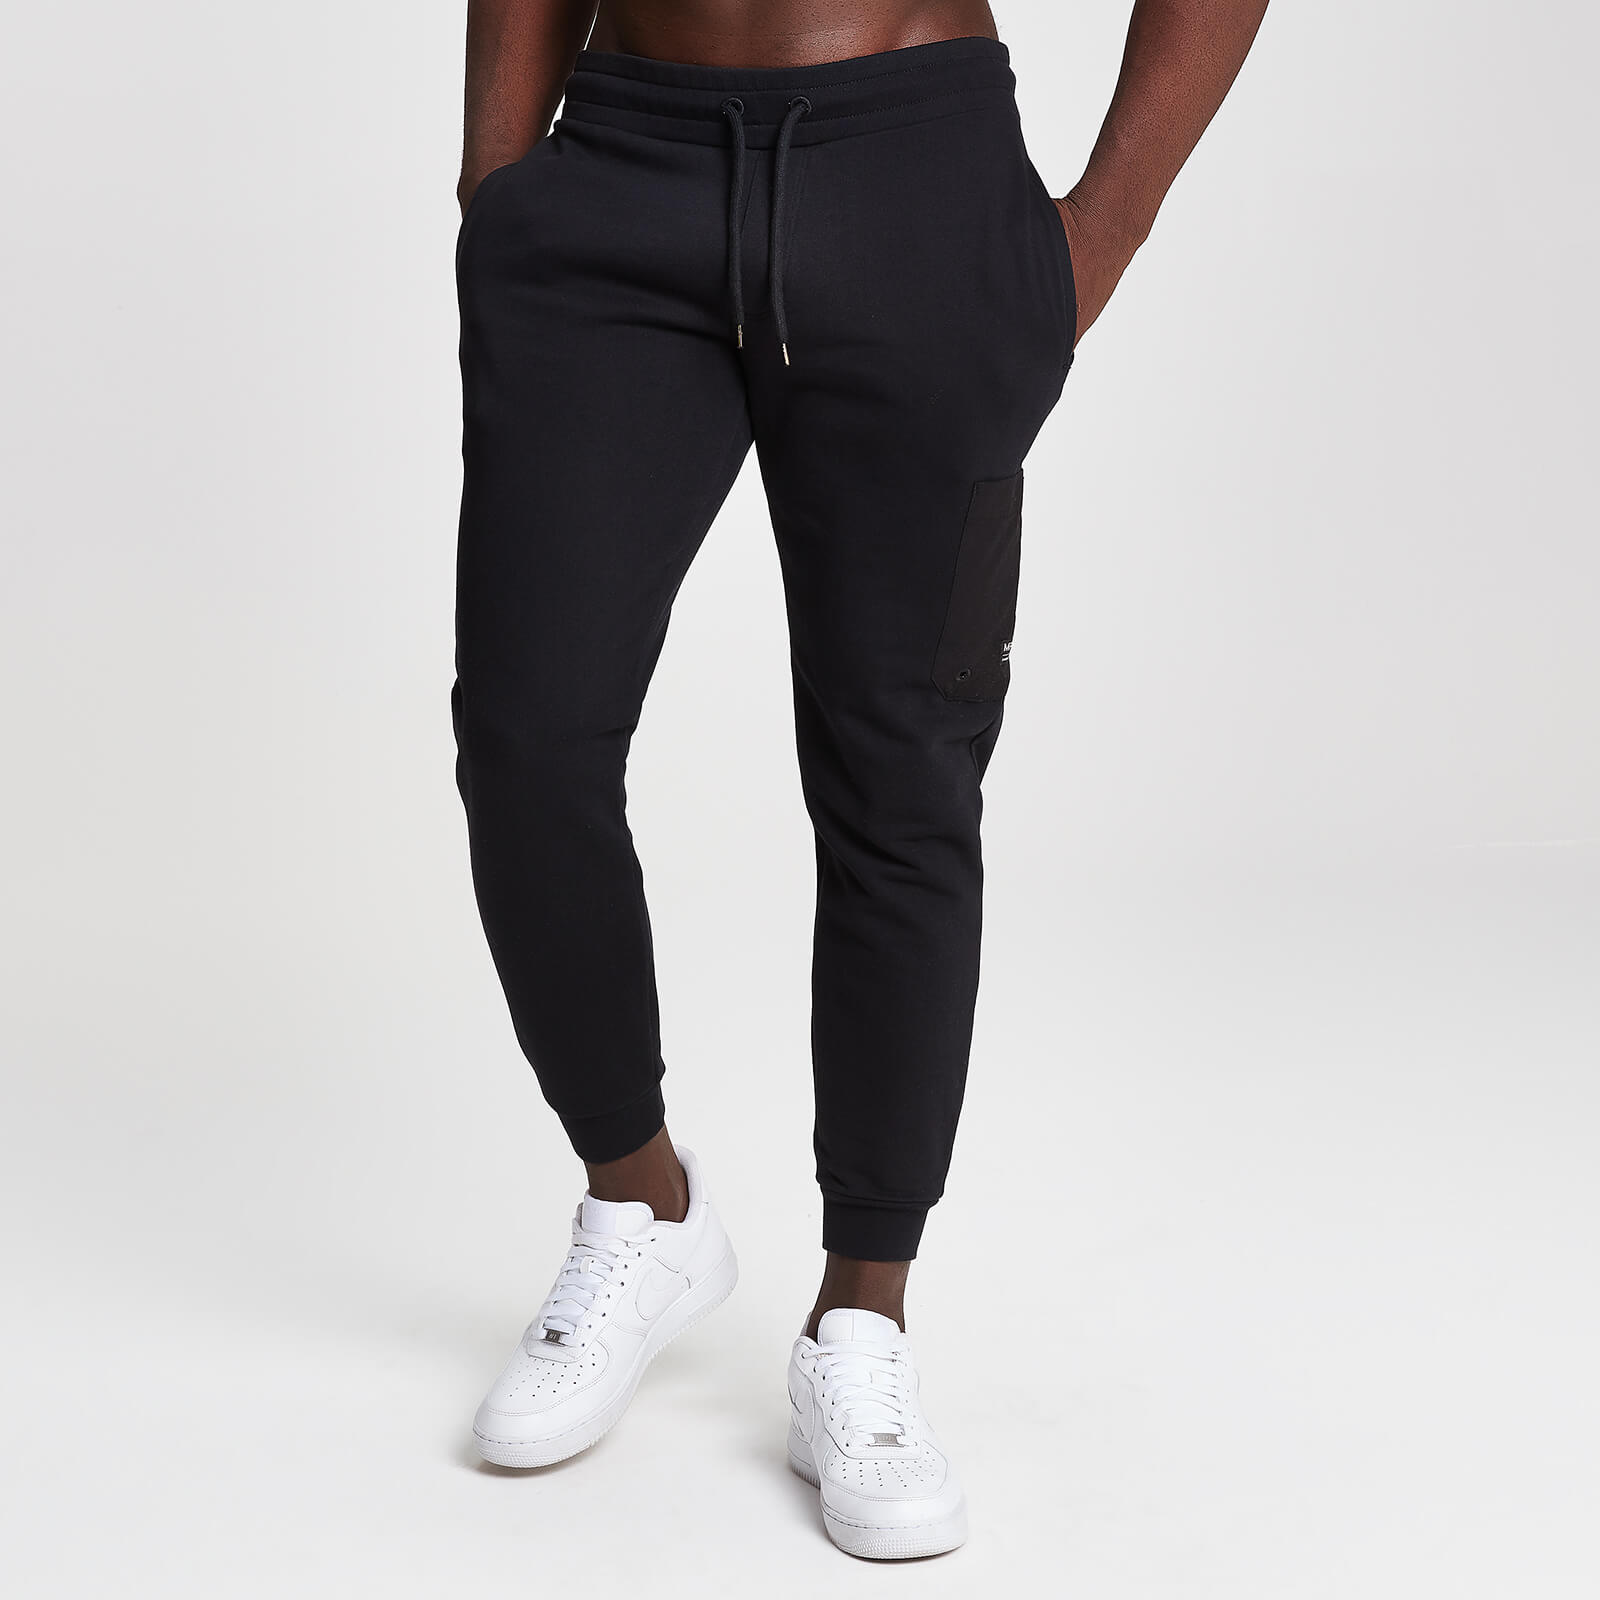 Pantalon de jogging Myprotein Utility pour homme - Noir